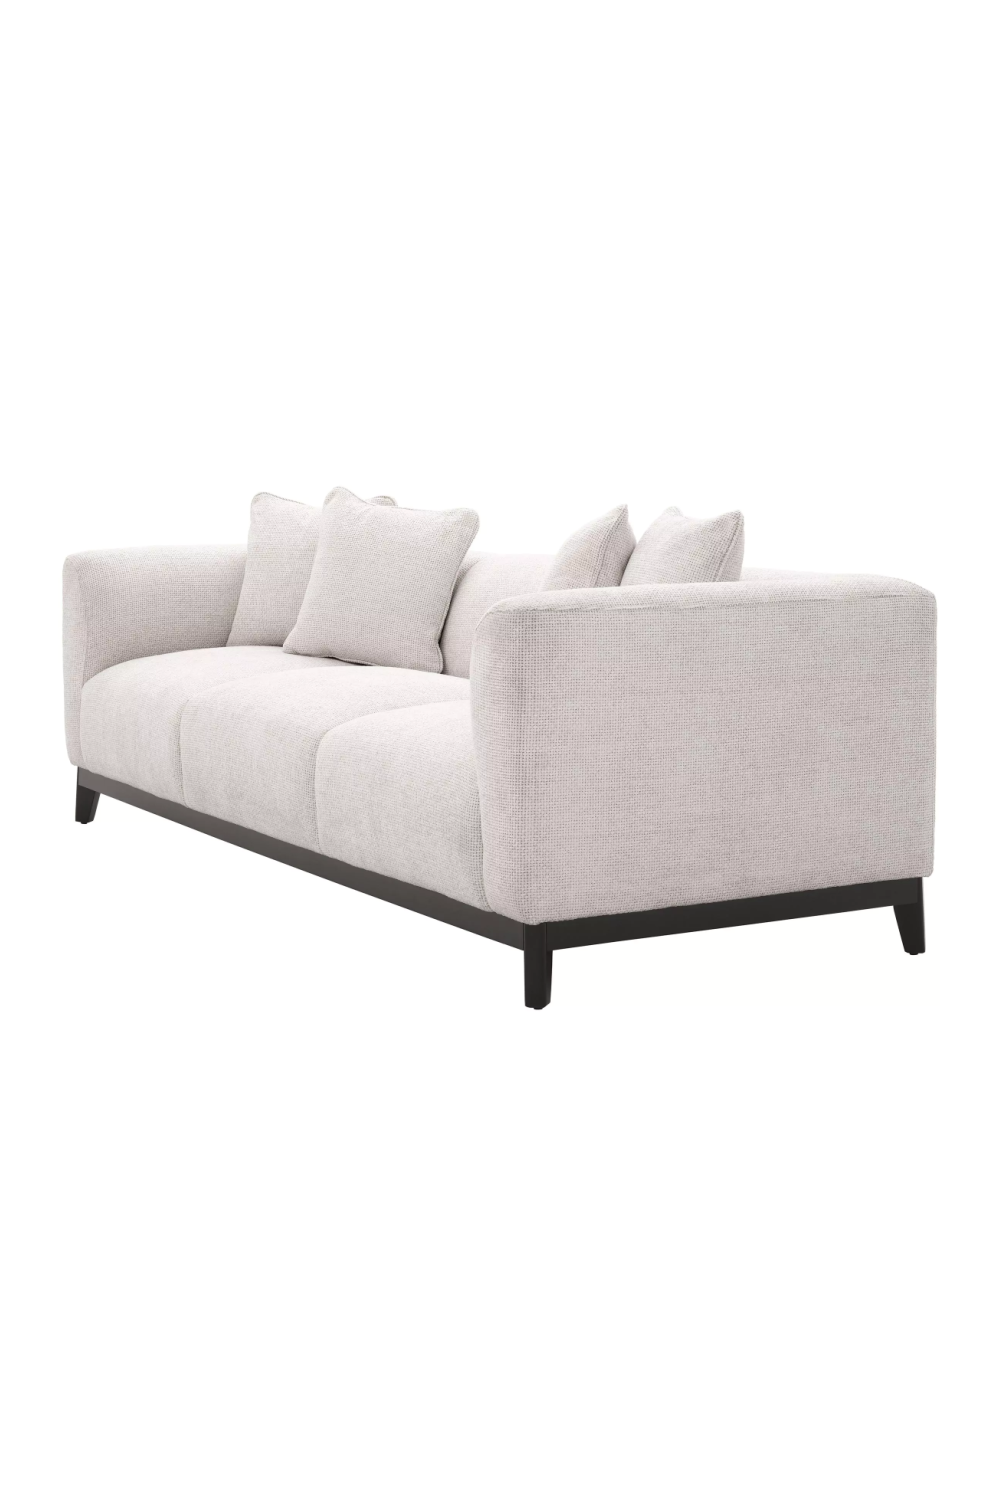 White Upholstered Modern Sofa | Eichholtz Corso | OROA.com